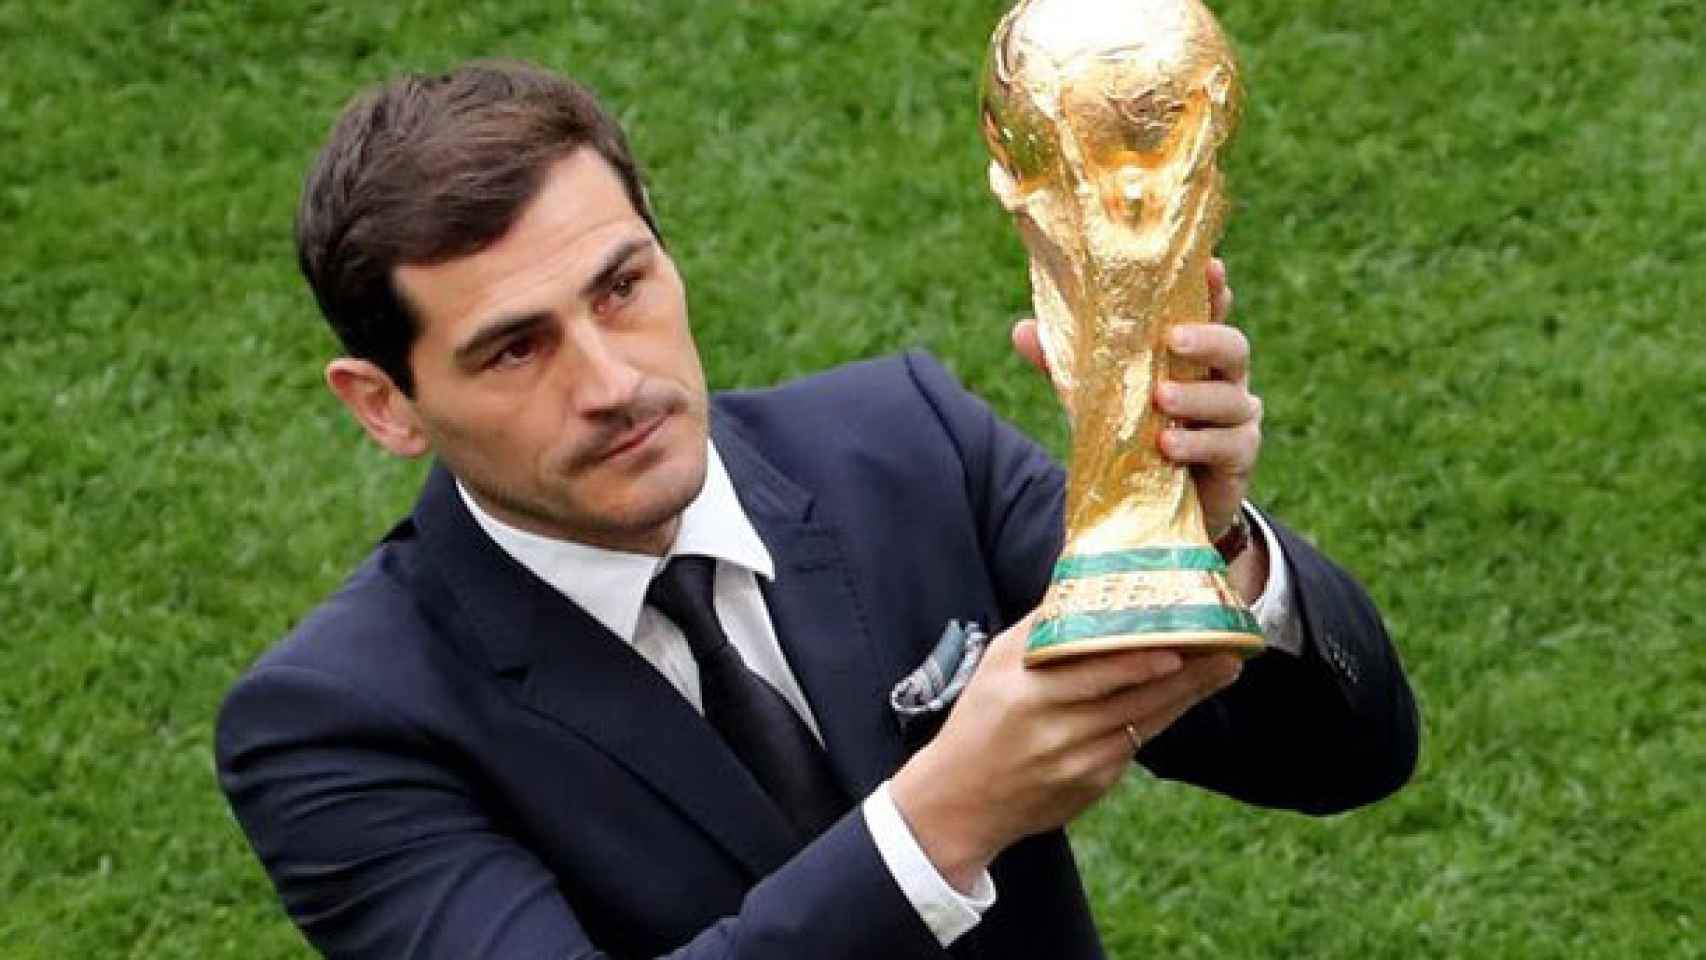 Iker Casillas presenta el trofeo de la copa del mundo en la ceremonia inaugural del Mundial de Rusia